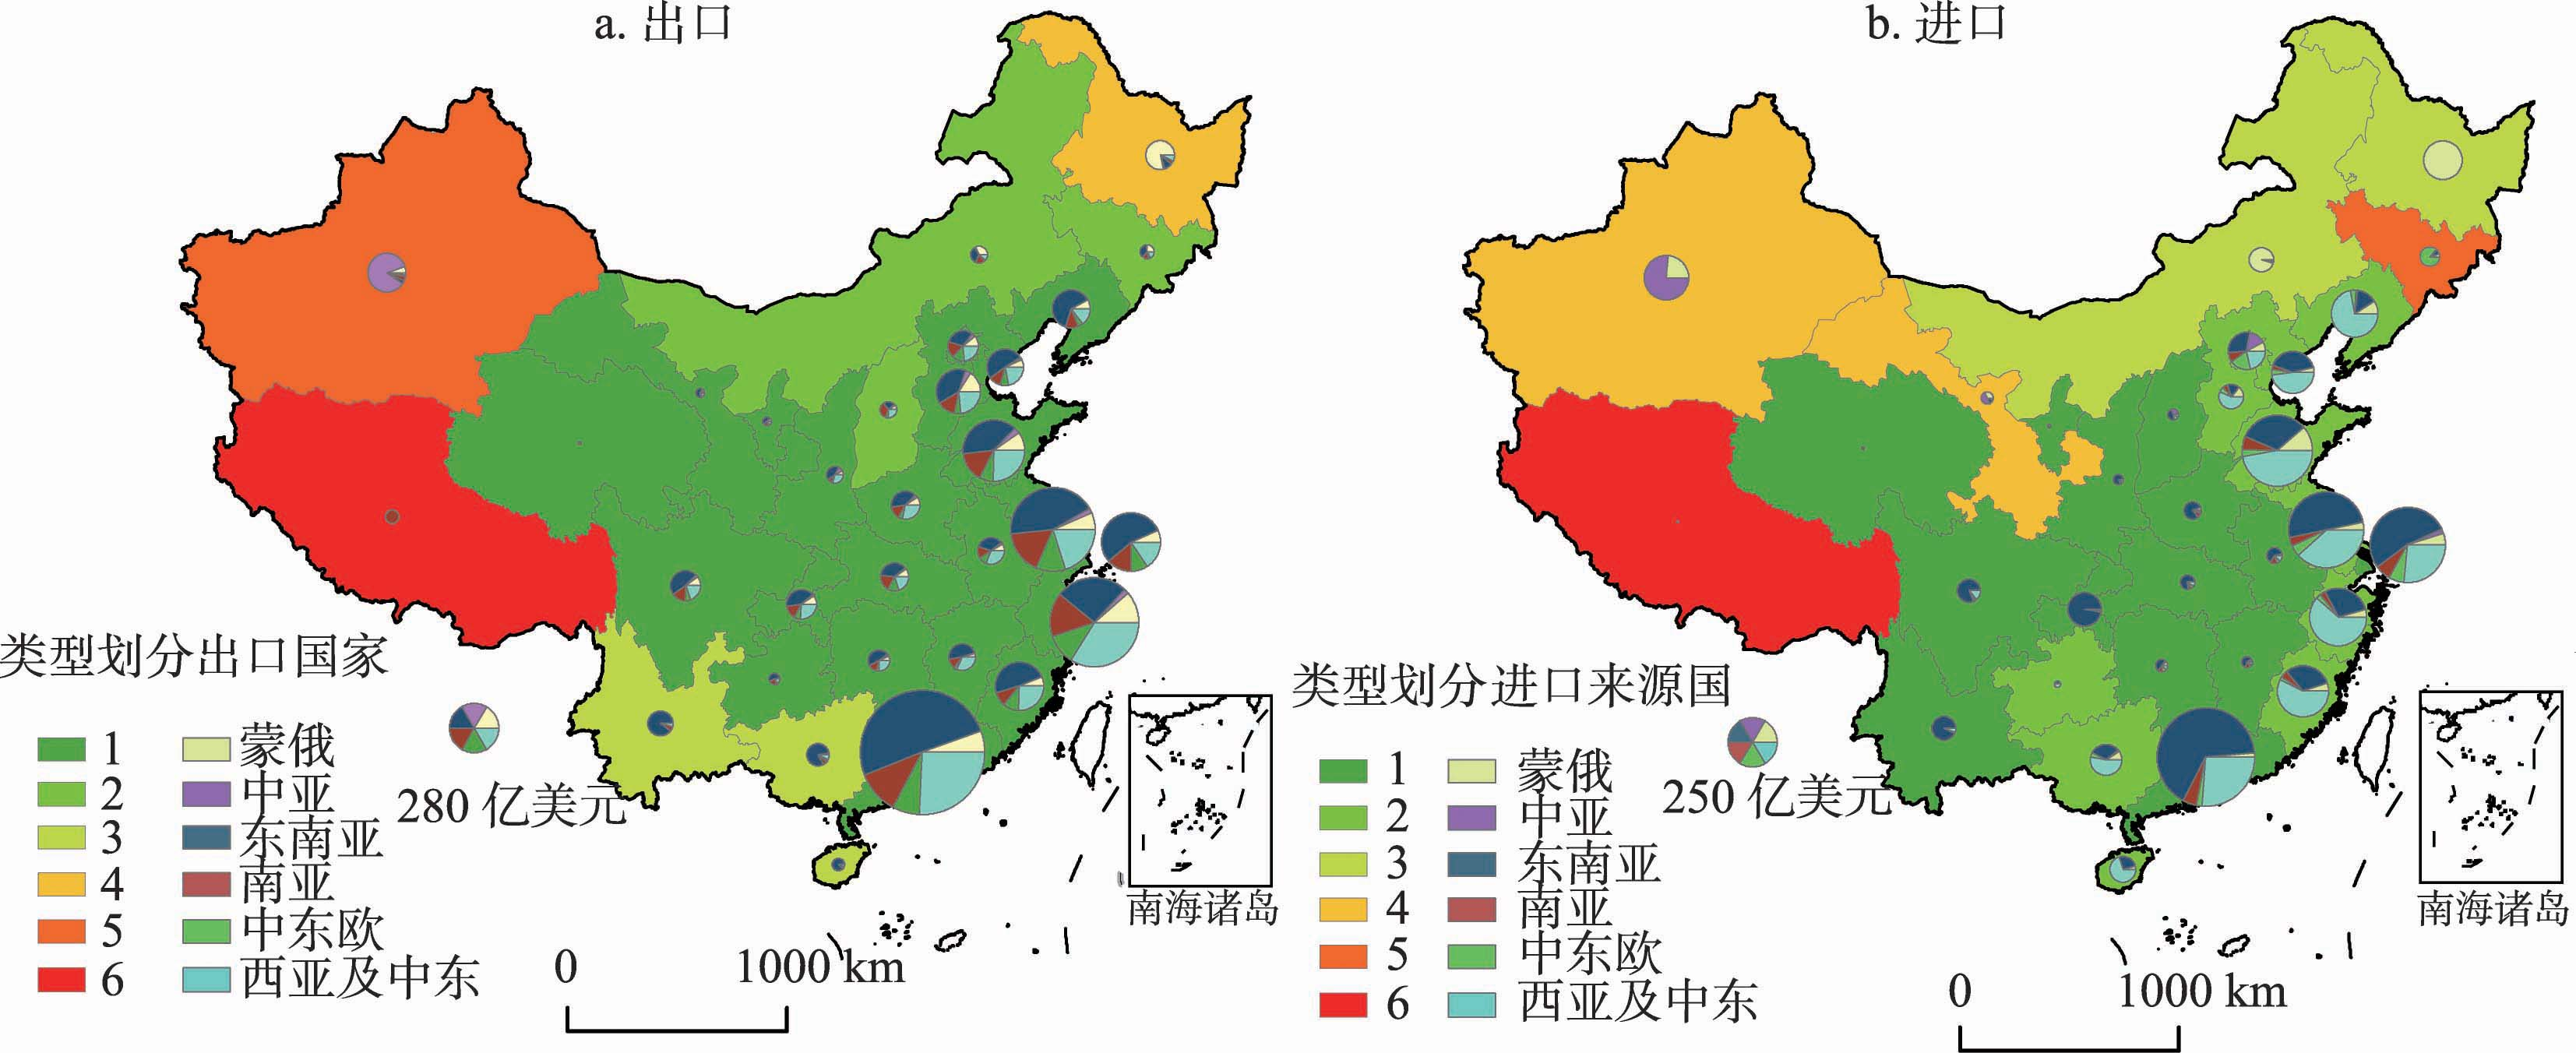 一带一路”沿线六大板块进出口贸易的商品结构 (数据来源:中国图片